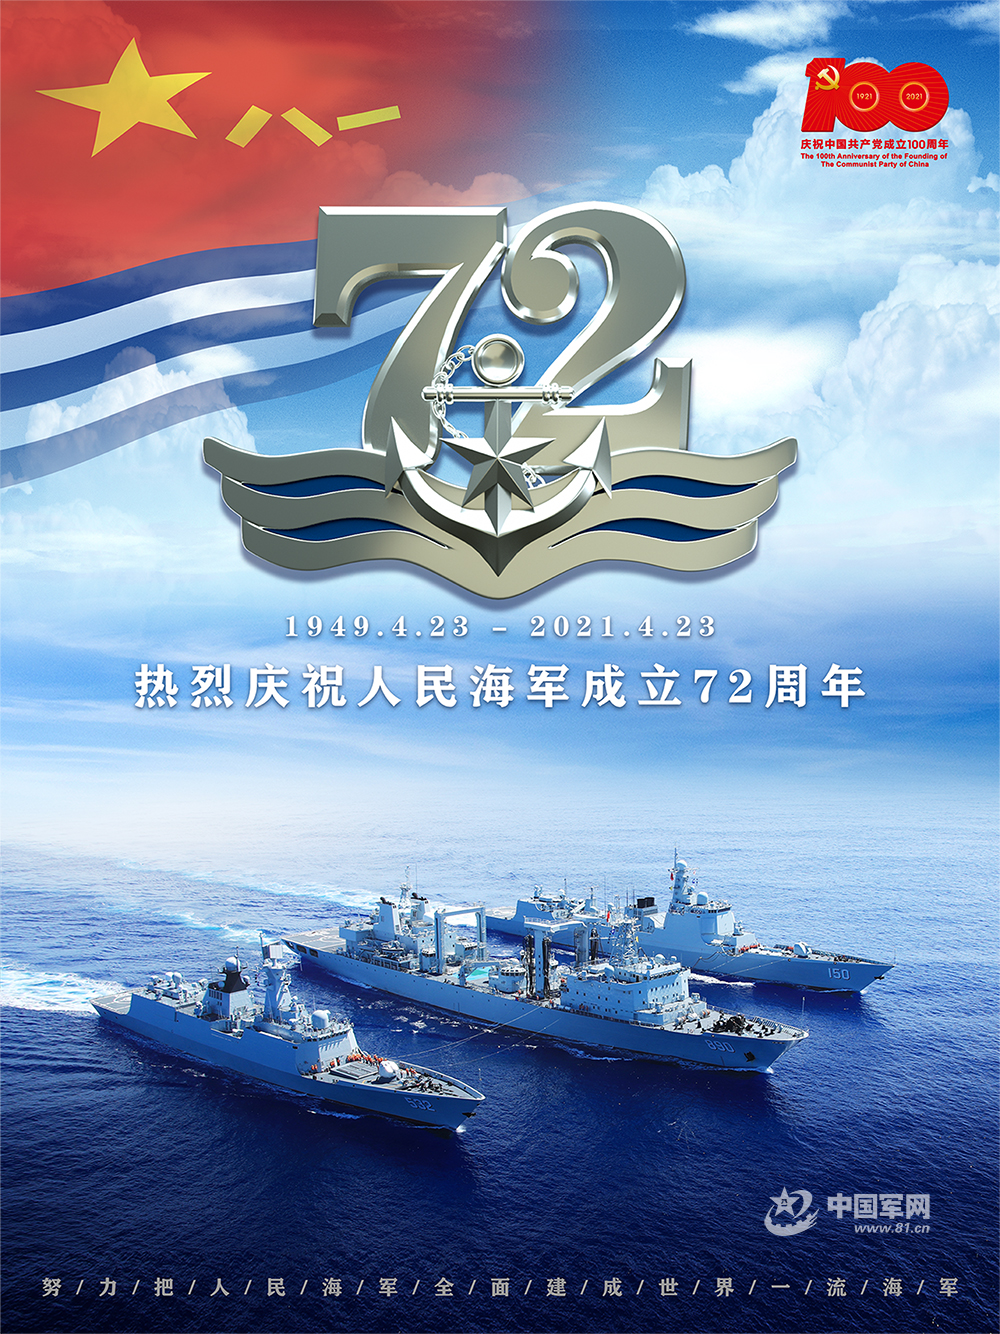 向海图强 挺进深蓝——庆祝人民海军成立72周年